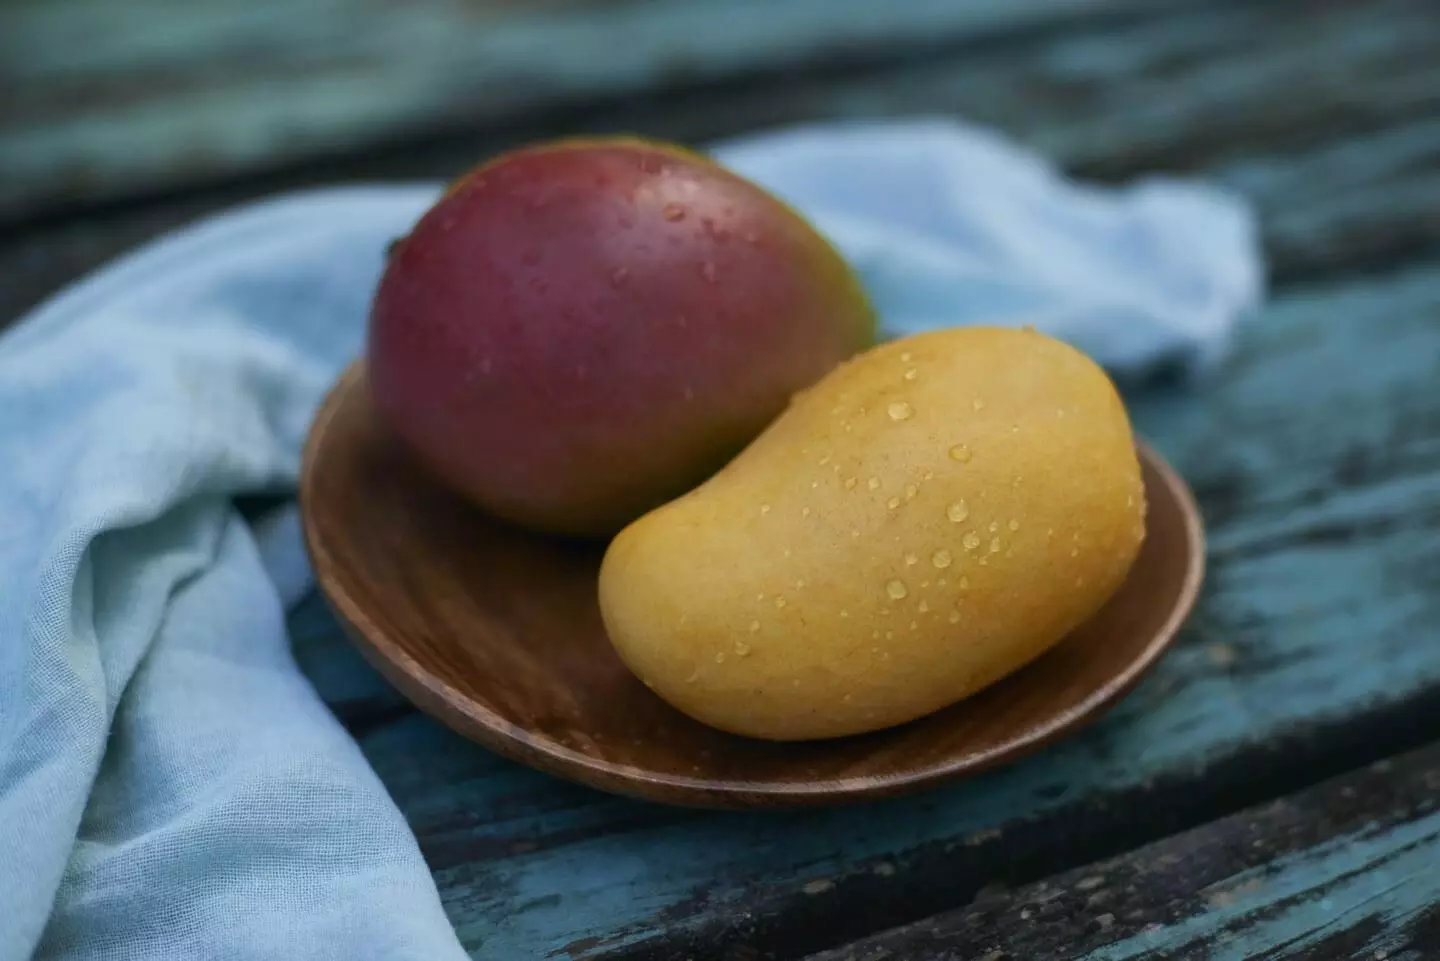 Eating mangoes may reduce facial wrinkles in postmenopausal women: Study